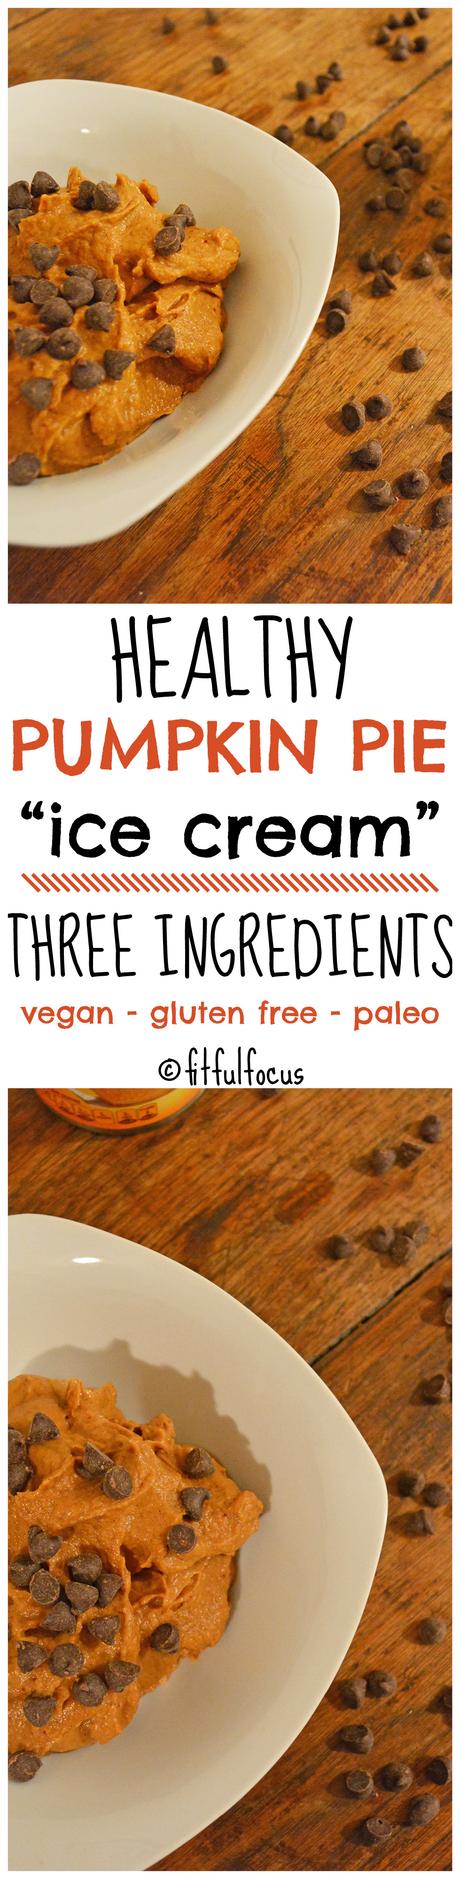 Healthy Pumpkin Pie “Ice Cream” (vegan, gluten free, paleo)